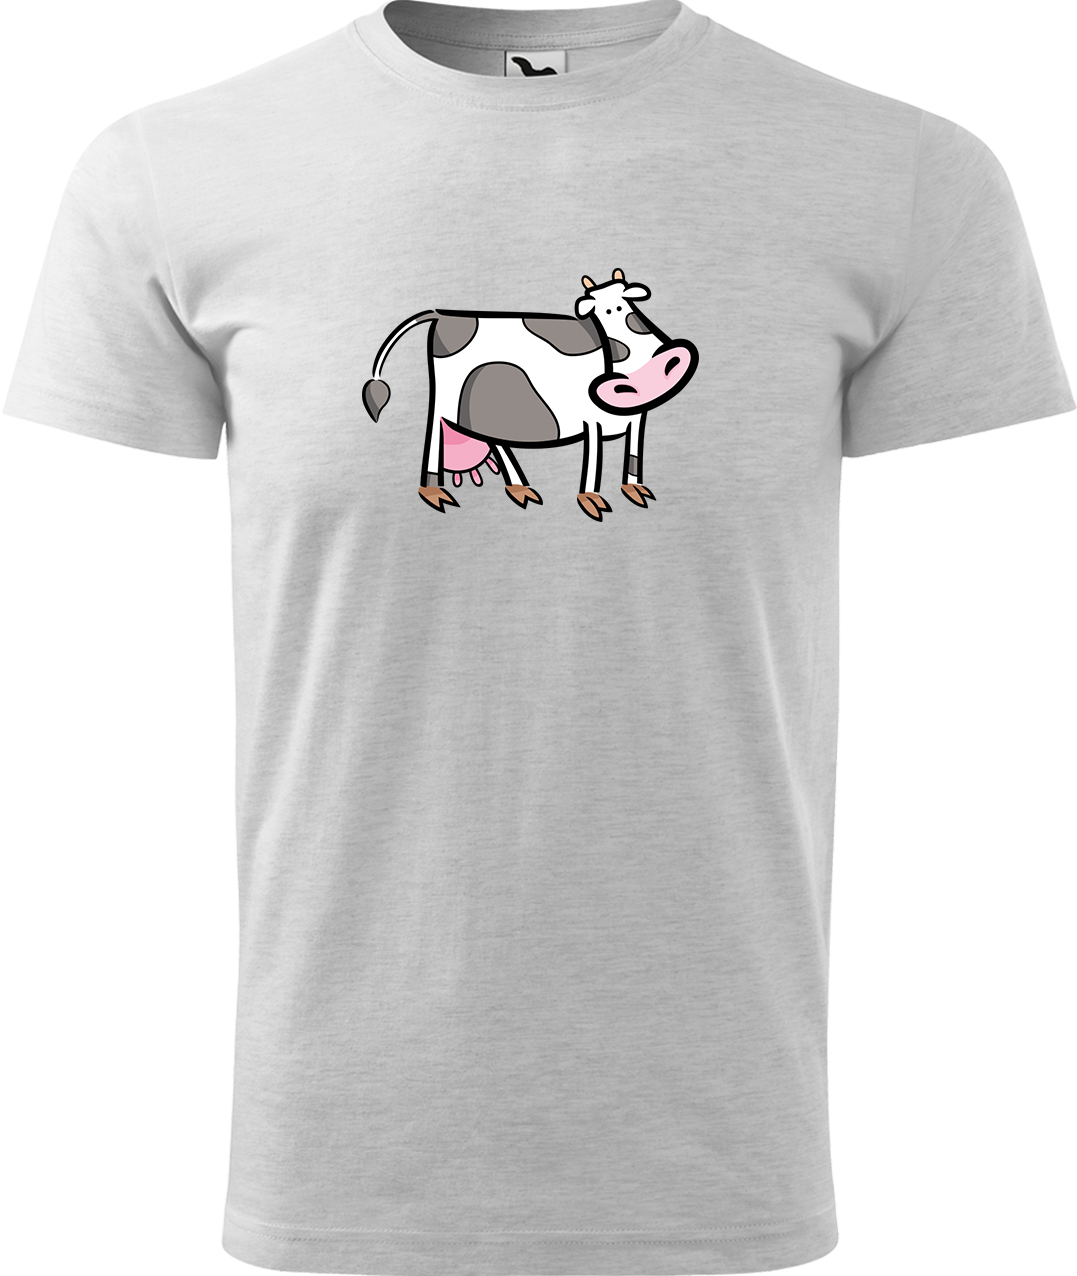 Pánské tričko s krávou - Kravička Velikost: L, Barva: Světle šedý melír (03), Střih: pánský